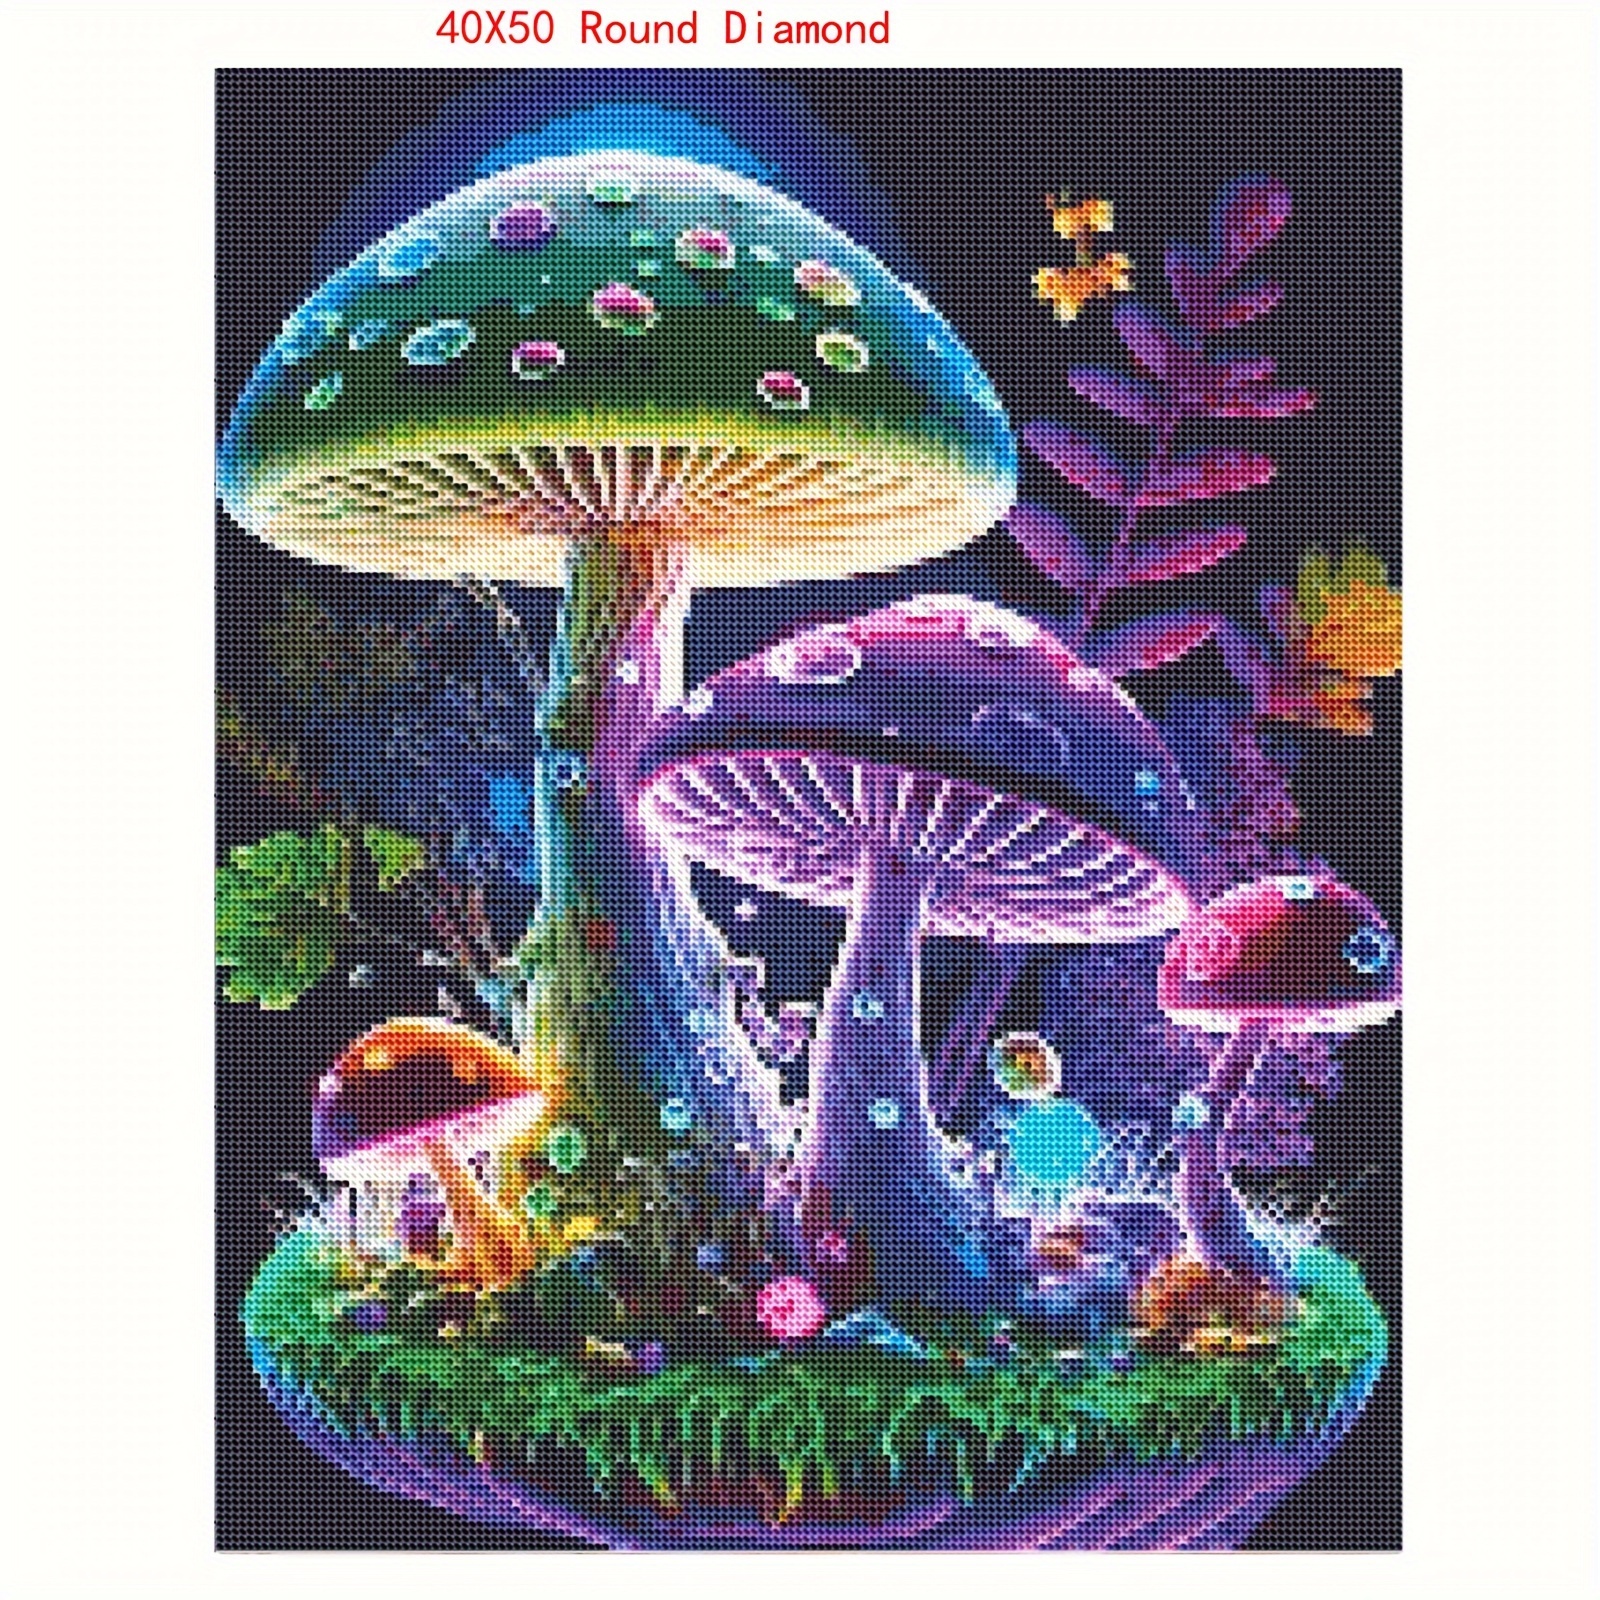 Mushroom World Diamond Painting Kit Adult 5d Diamond Art Kit - Temu